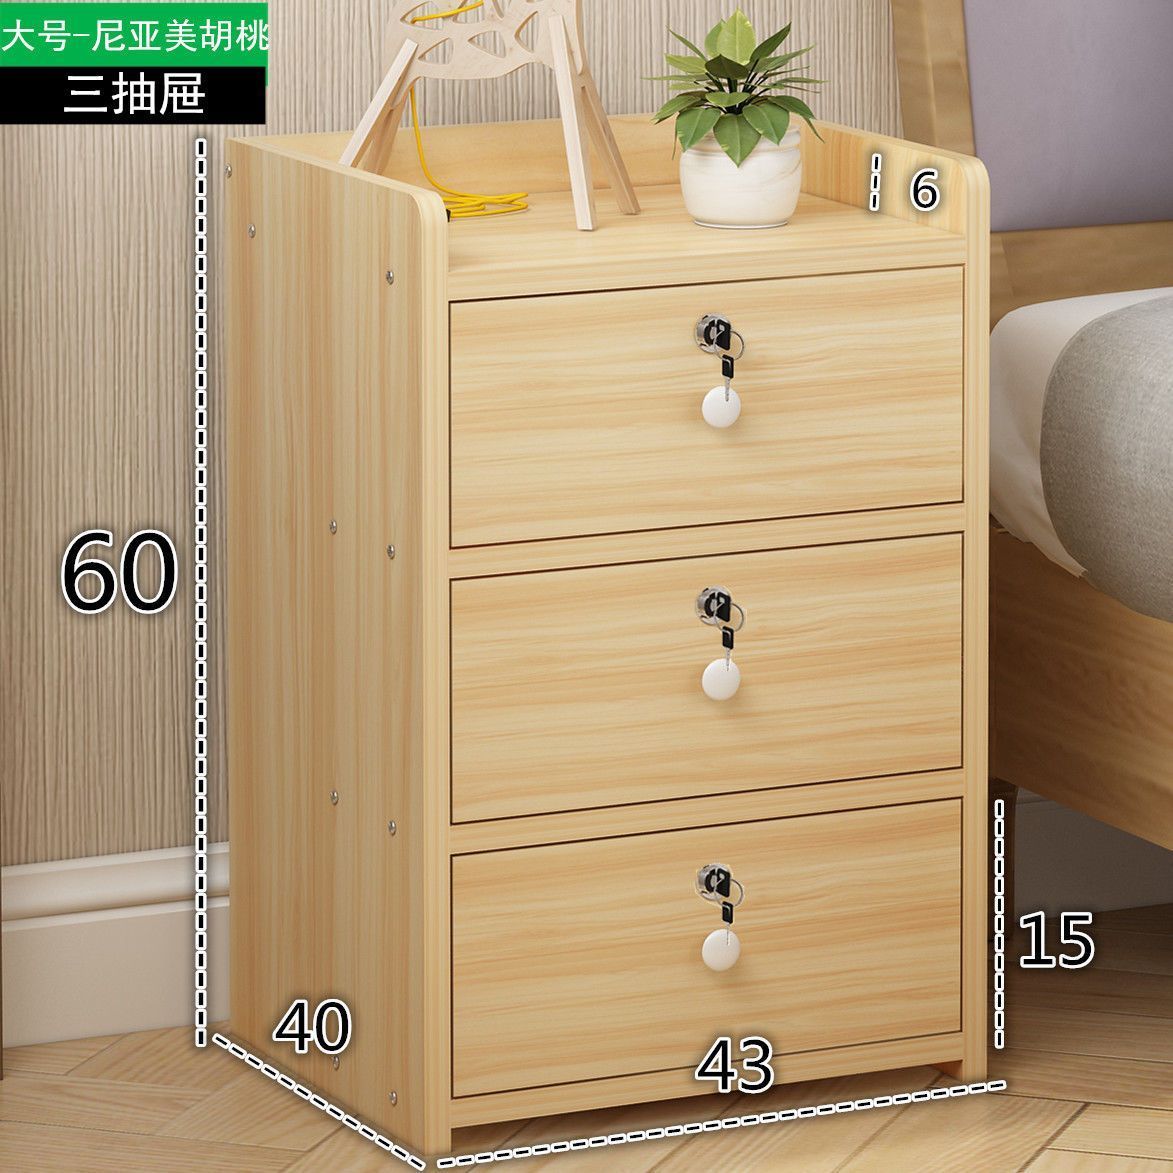 床頭櫃簡約現代簡易家用床邊收納櫃迷你儲物櫃小型臥室帶鎖小櫃子